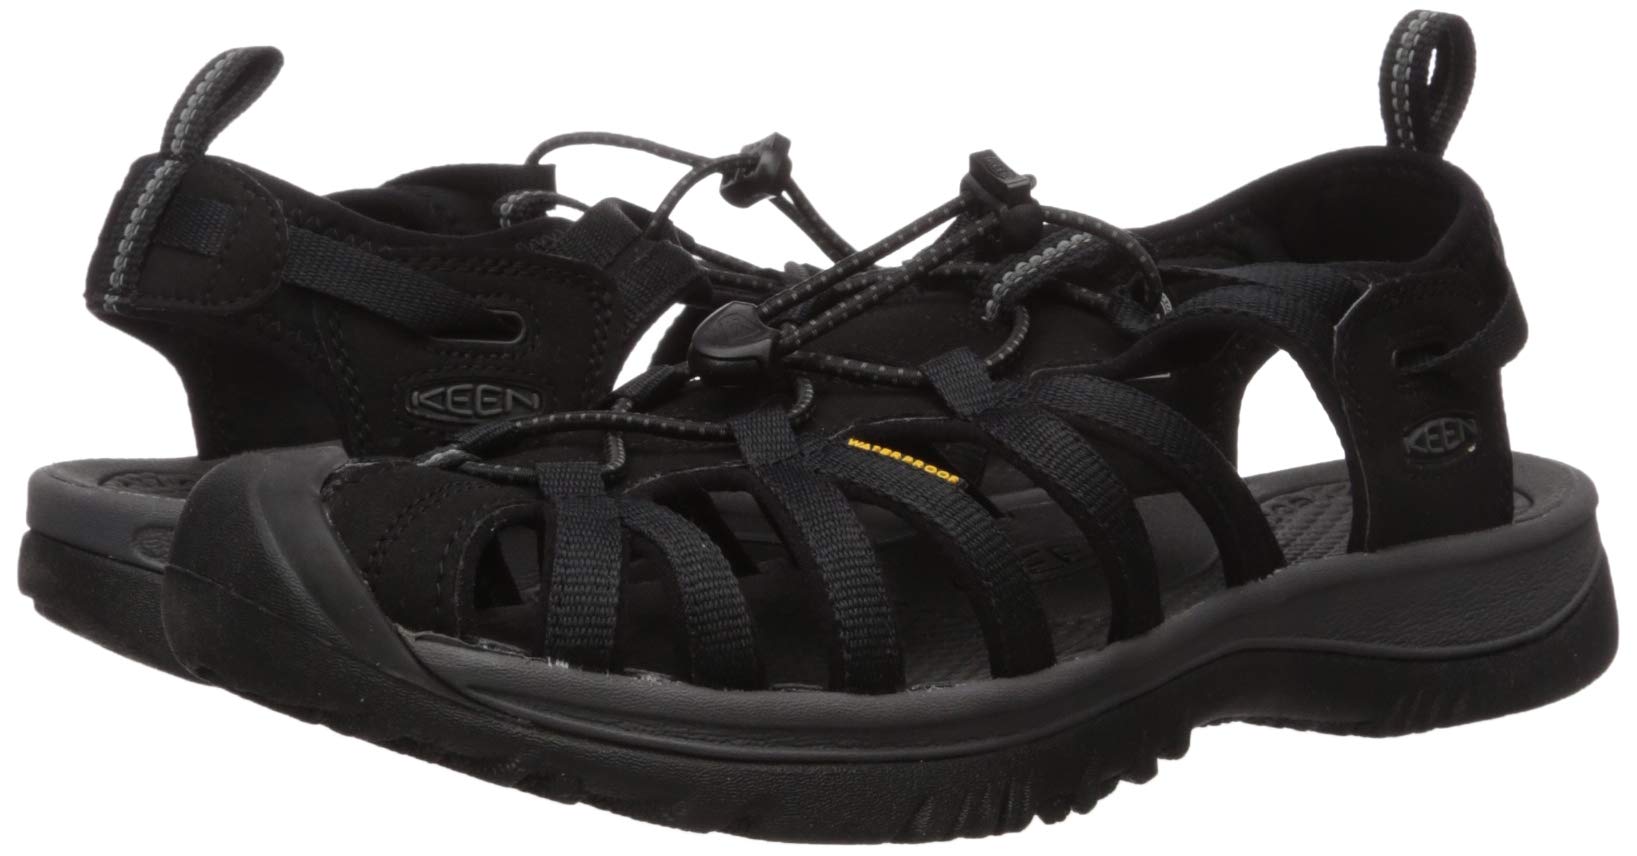 KEEN Women's Whisper Closed Toe Sport Sandals, Black/Magnet, 5